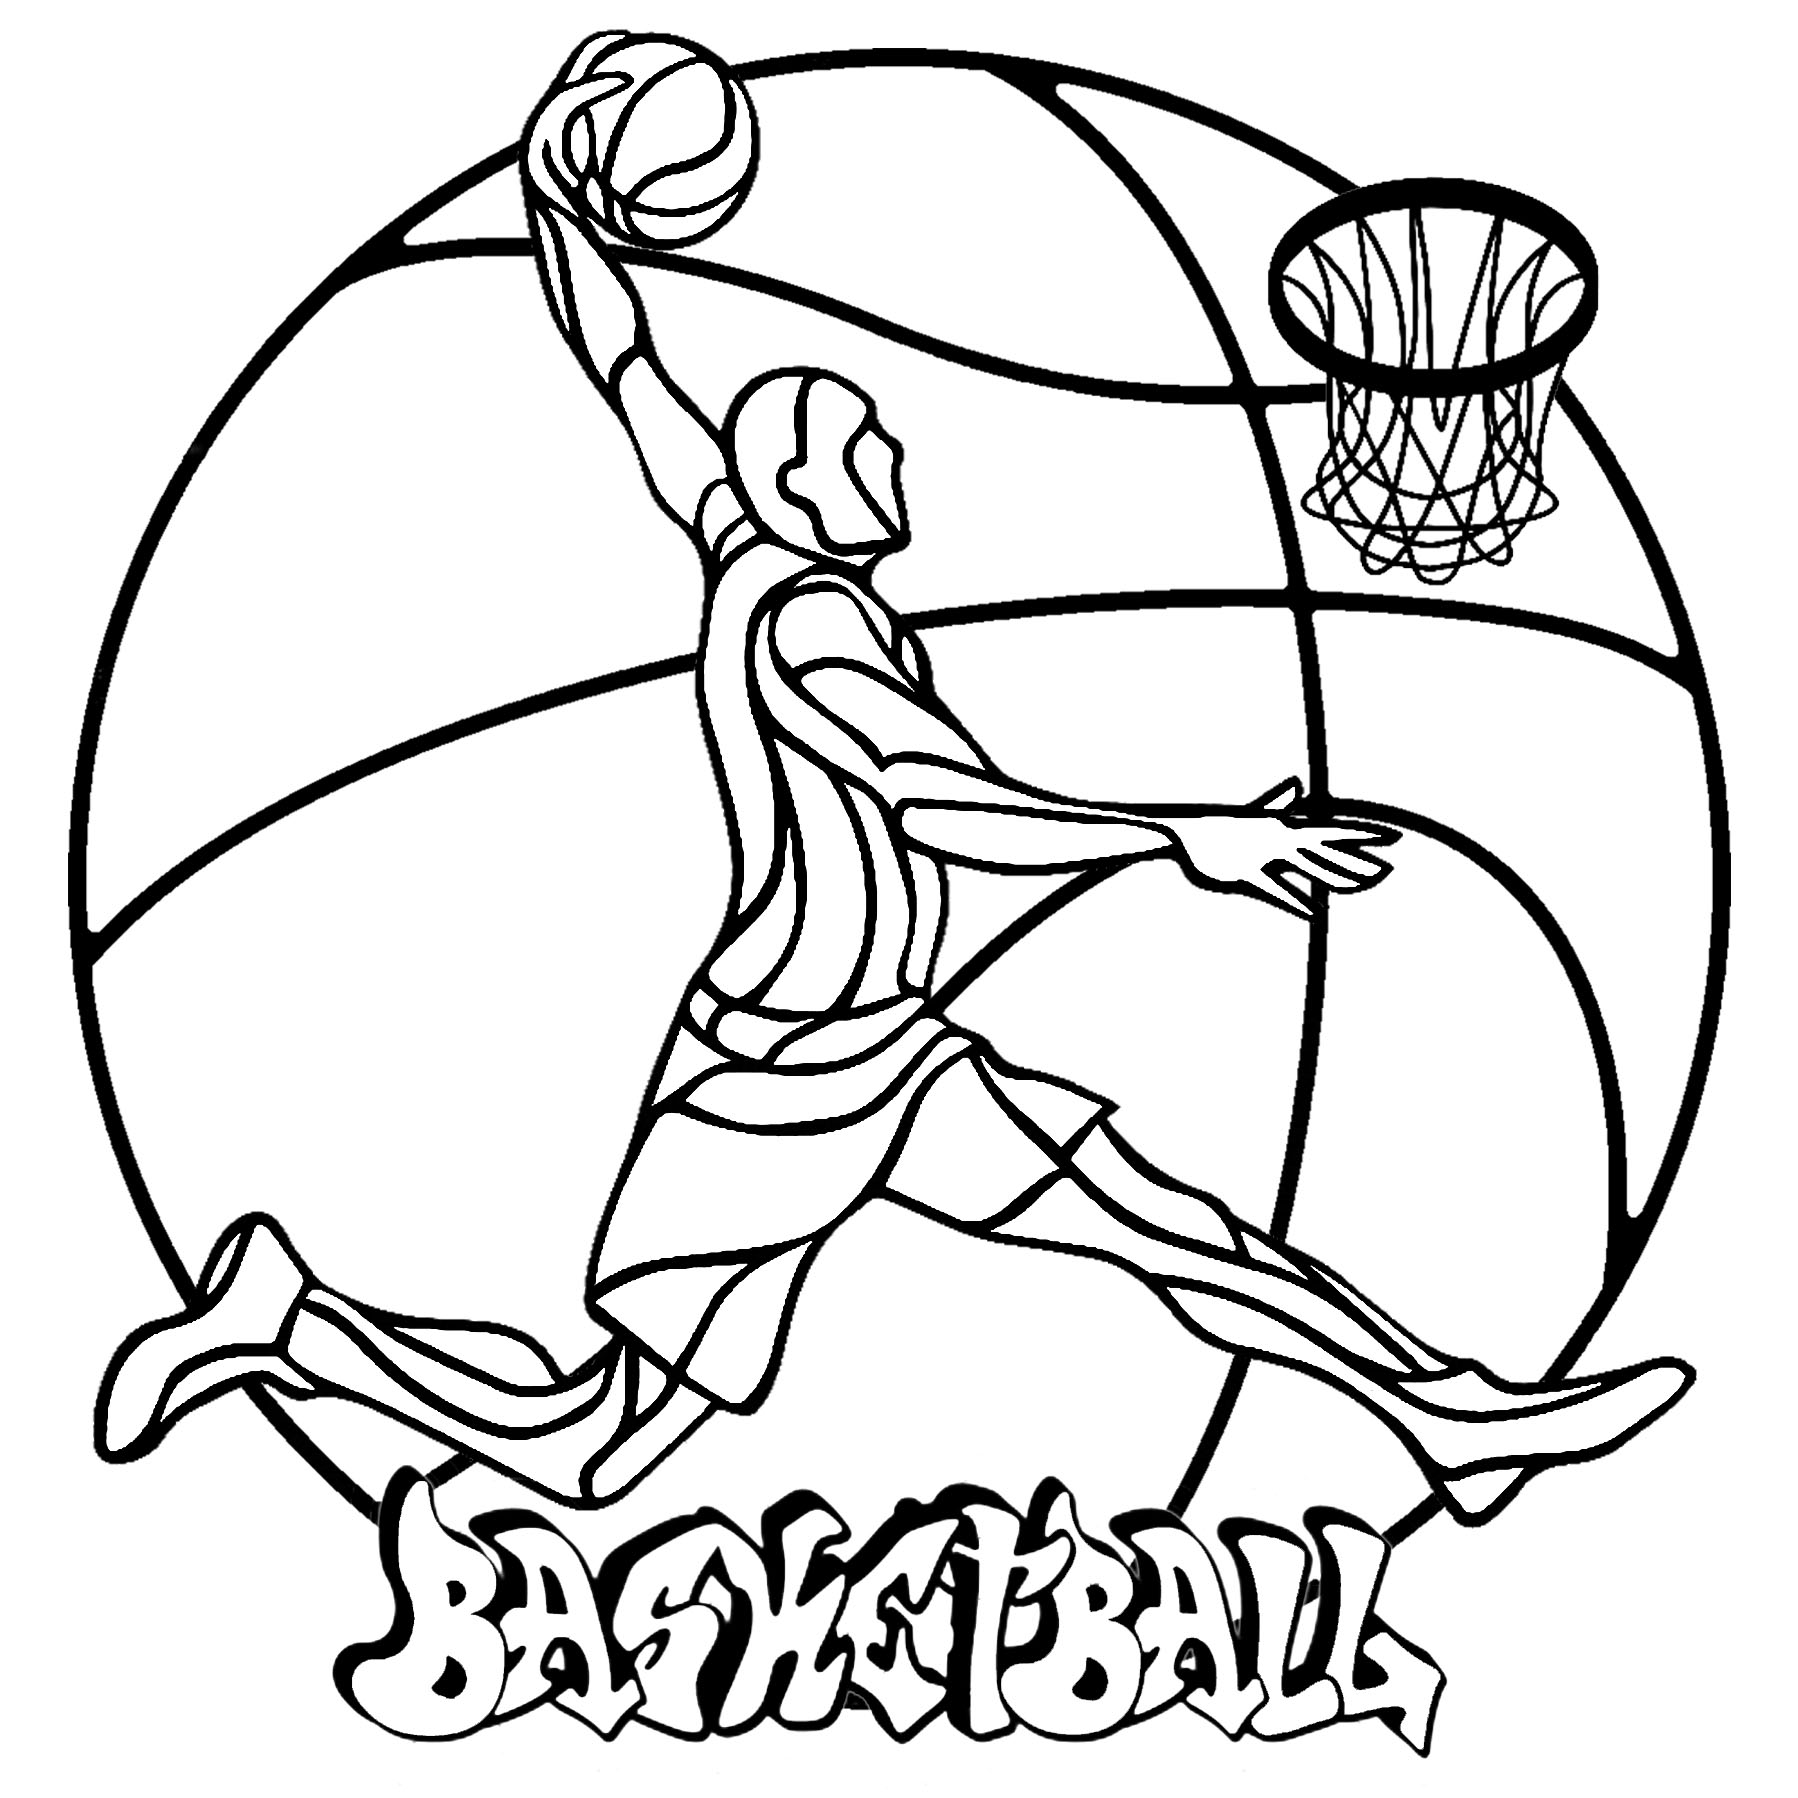 Um Mandala simples sobre o tema de um dos desportos mais populares: o basquetebol.  Colorir este jogador de basquetebol, a sua bola, o cesto, a etiqueta 'Basketball', e a bola grande ao fundo, Artista : Art'Isabelle